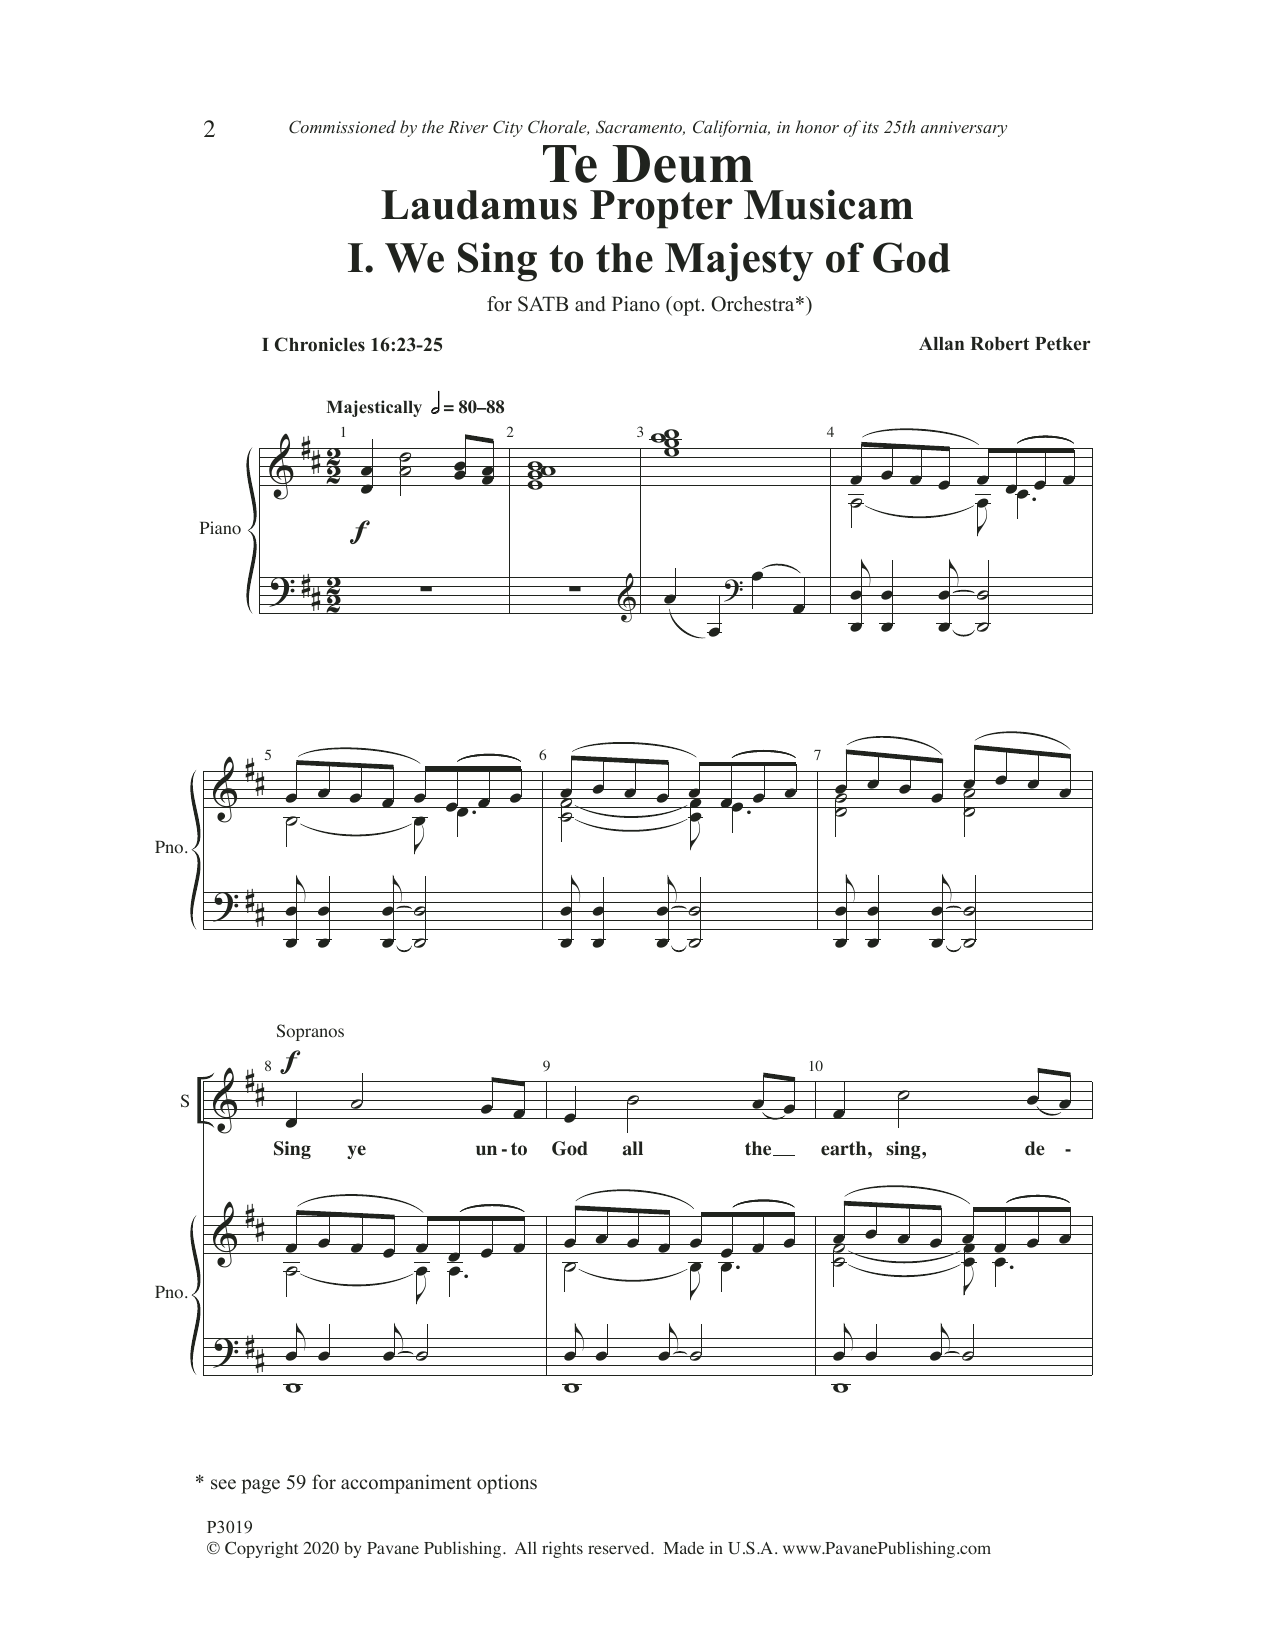 Allan Robert Petker Te Deum Laudamus Propter Musicam Sheet Music Notes & Chords for SATB Choir - Download or Print PDF